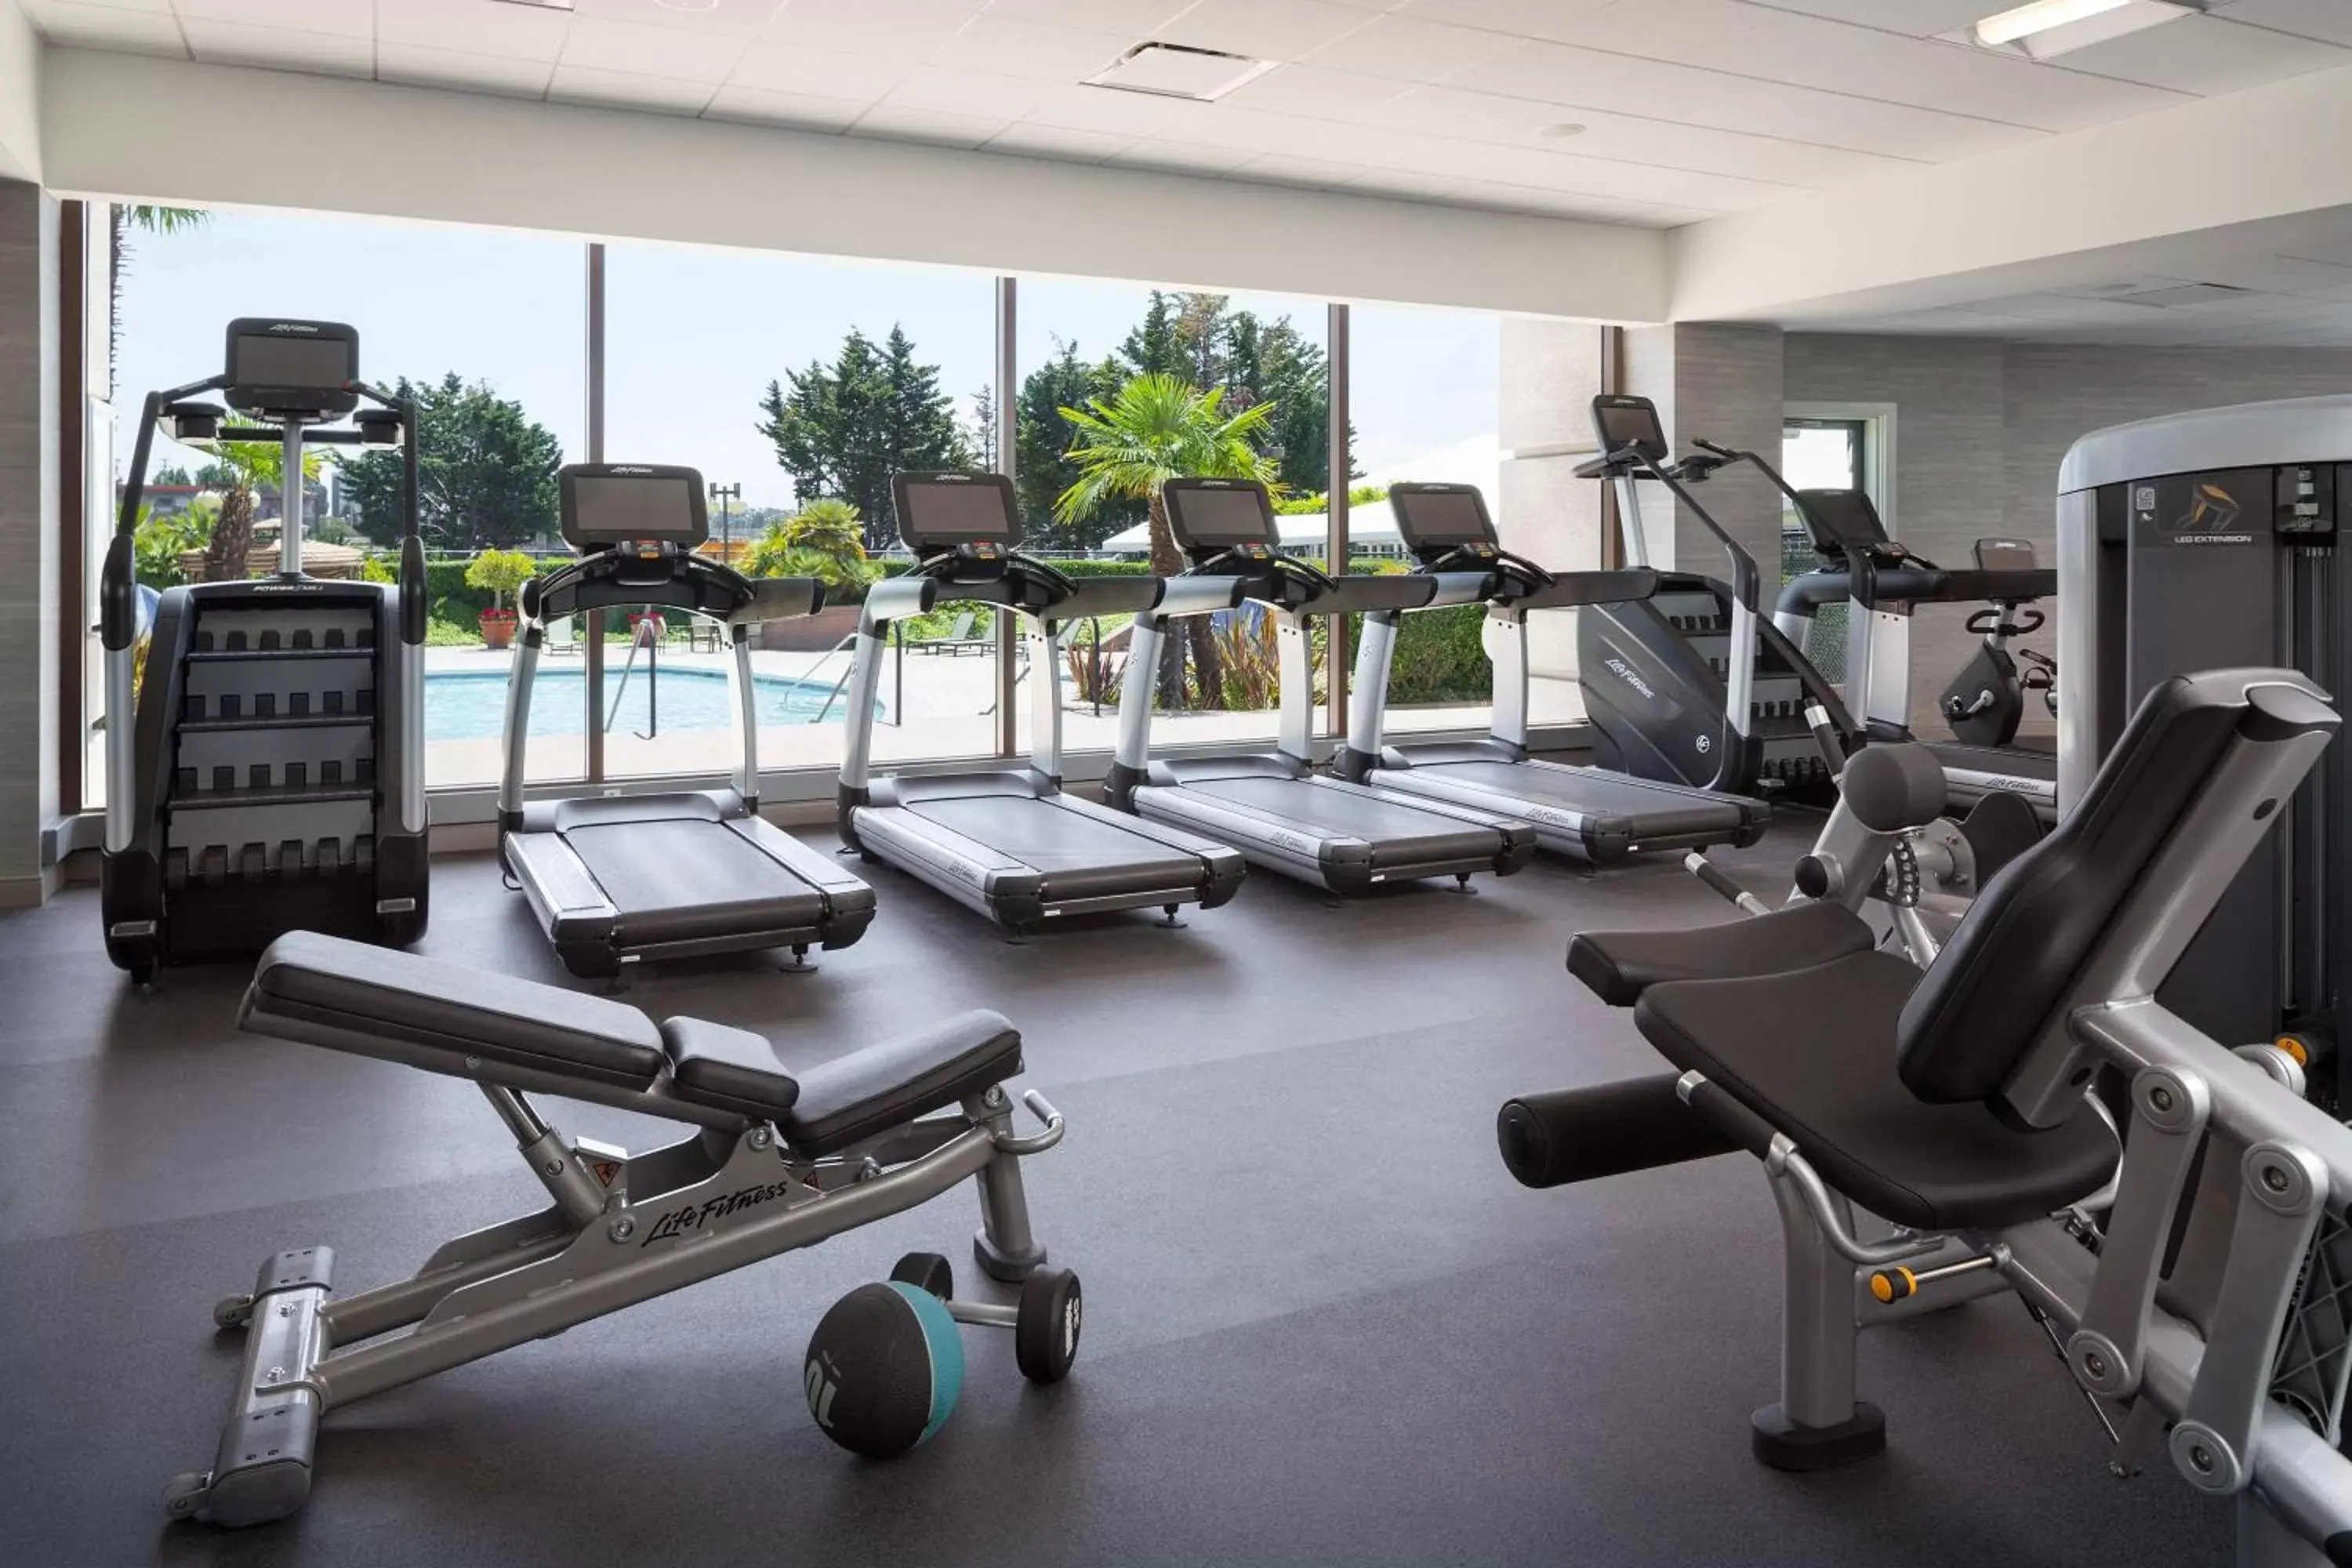 Fitness centre/facilities, Fitness Center/Facilities in Hyatt Regency San Francisco Airport